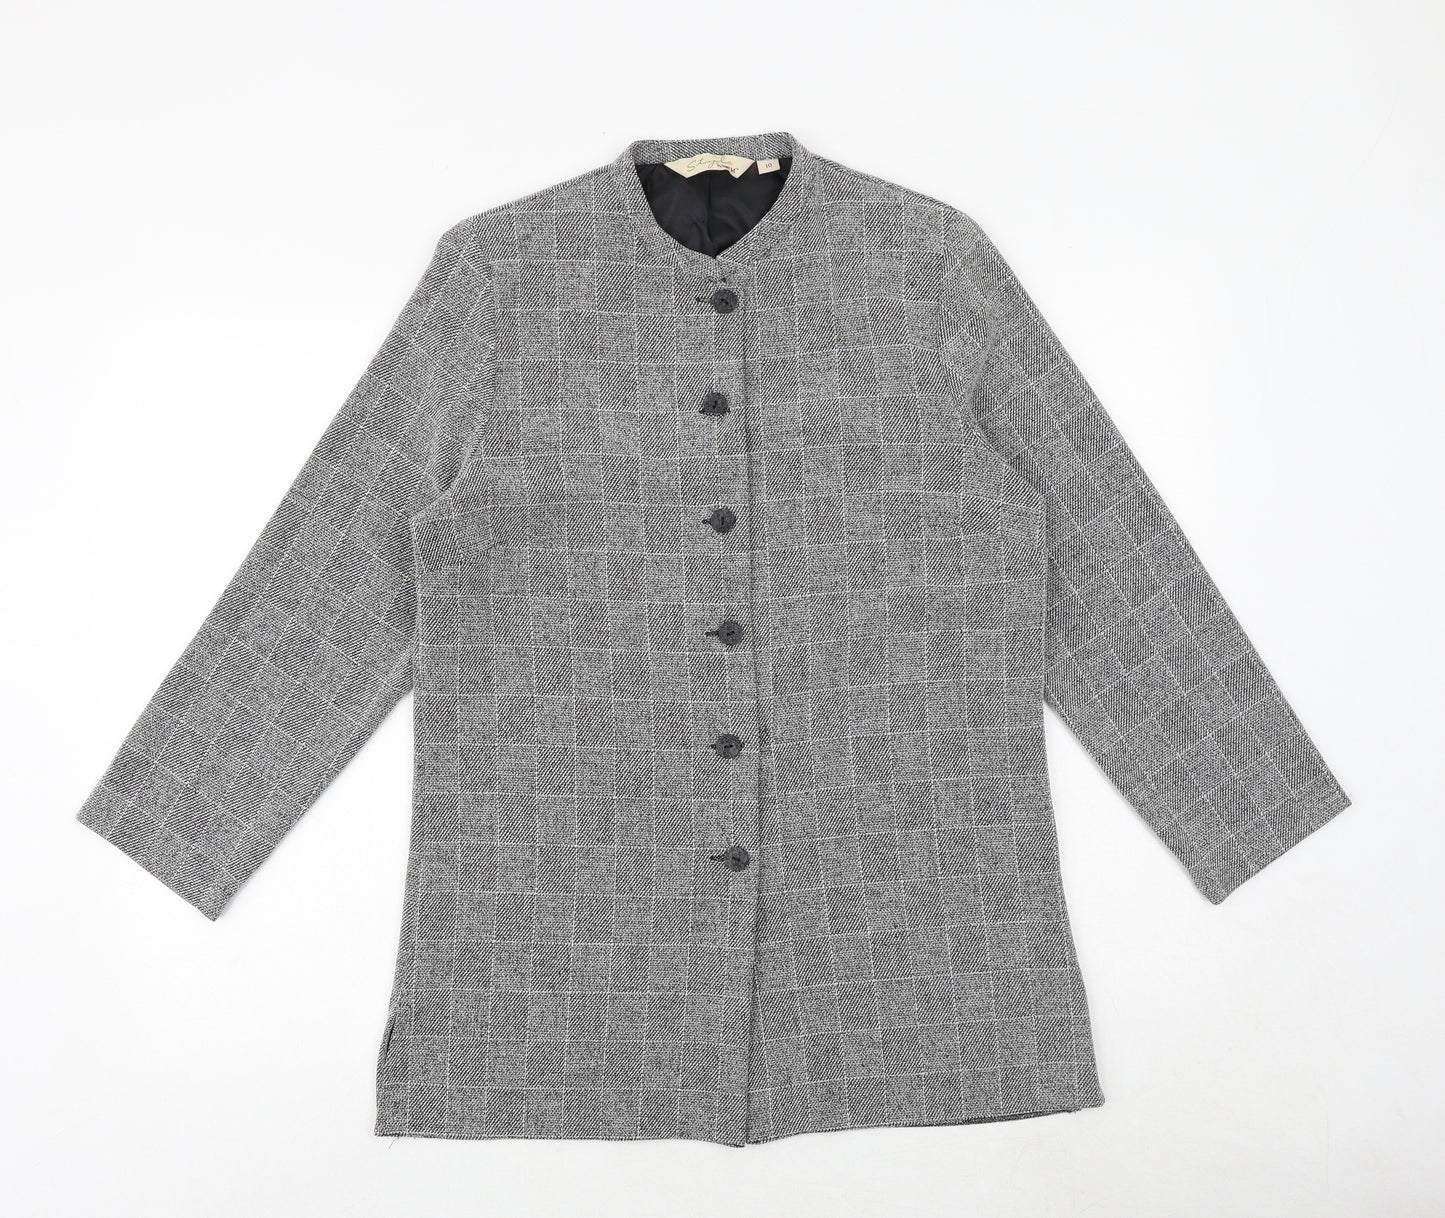 EWM Womens Grey Geometric Jacket Blazer Size 10 Button